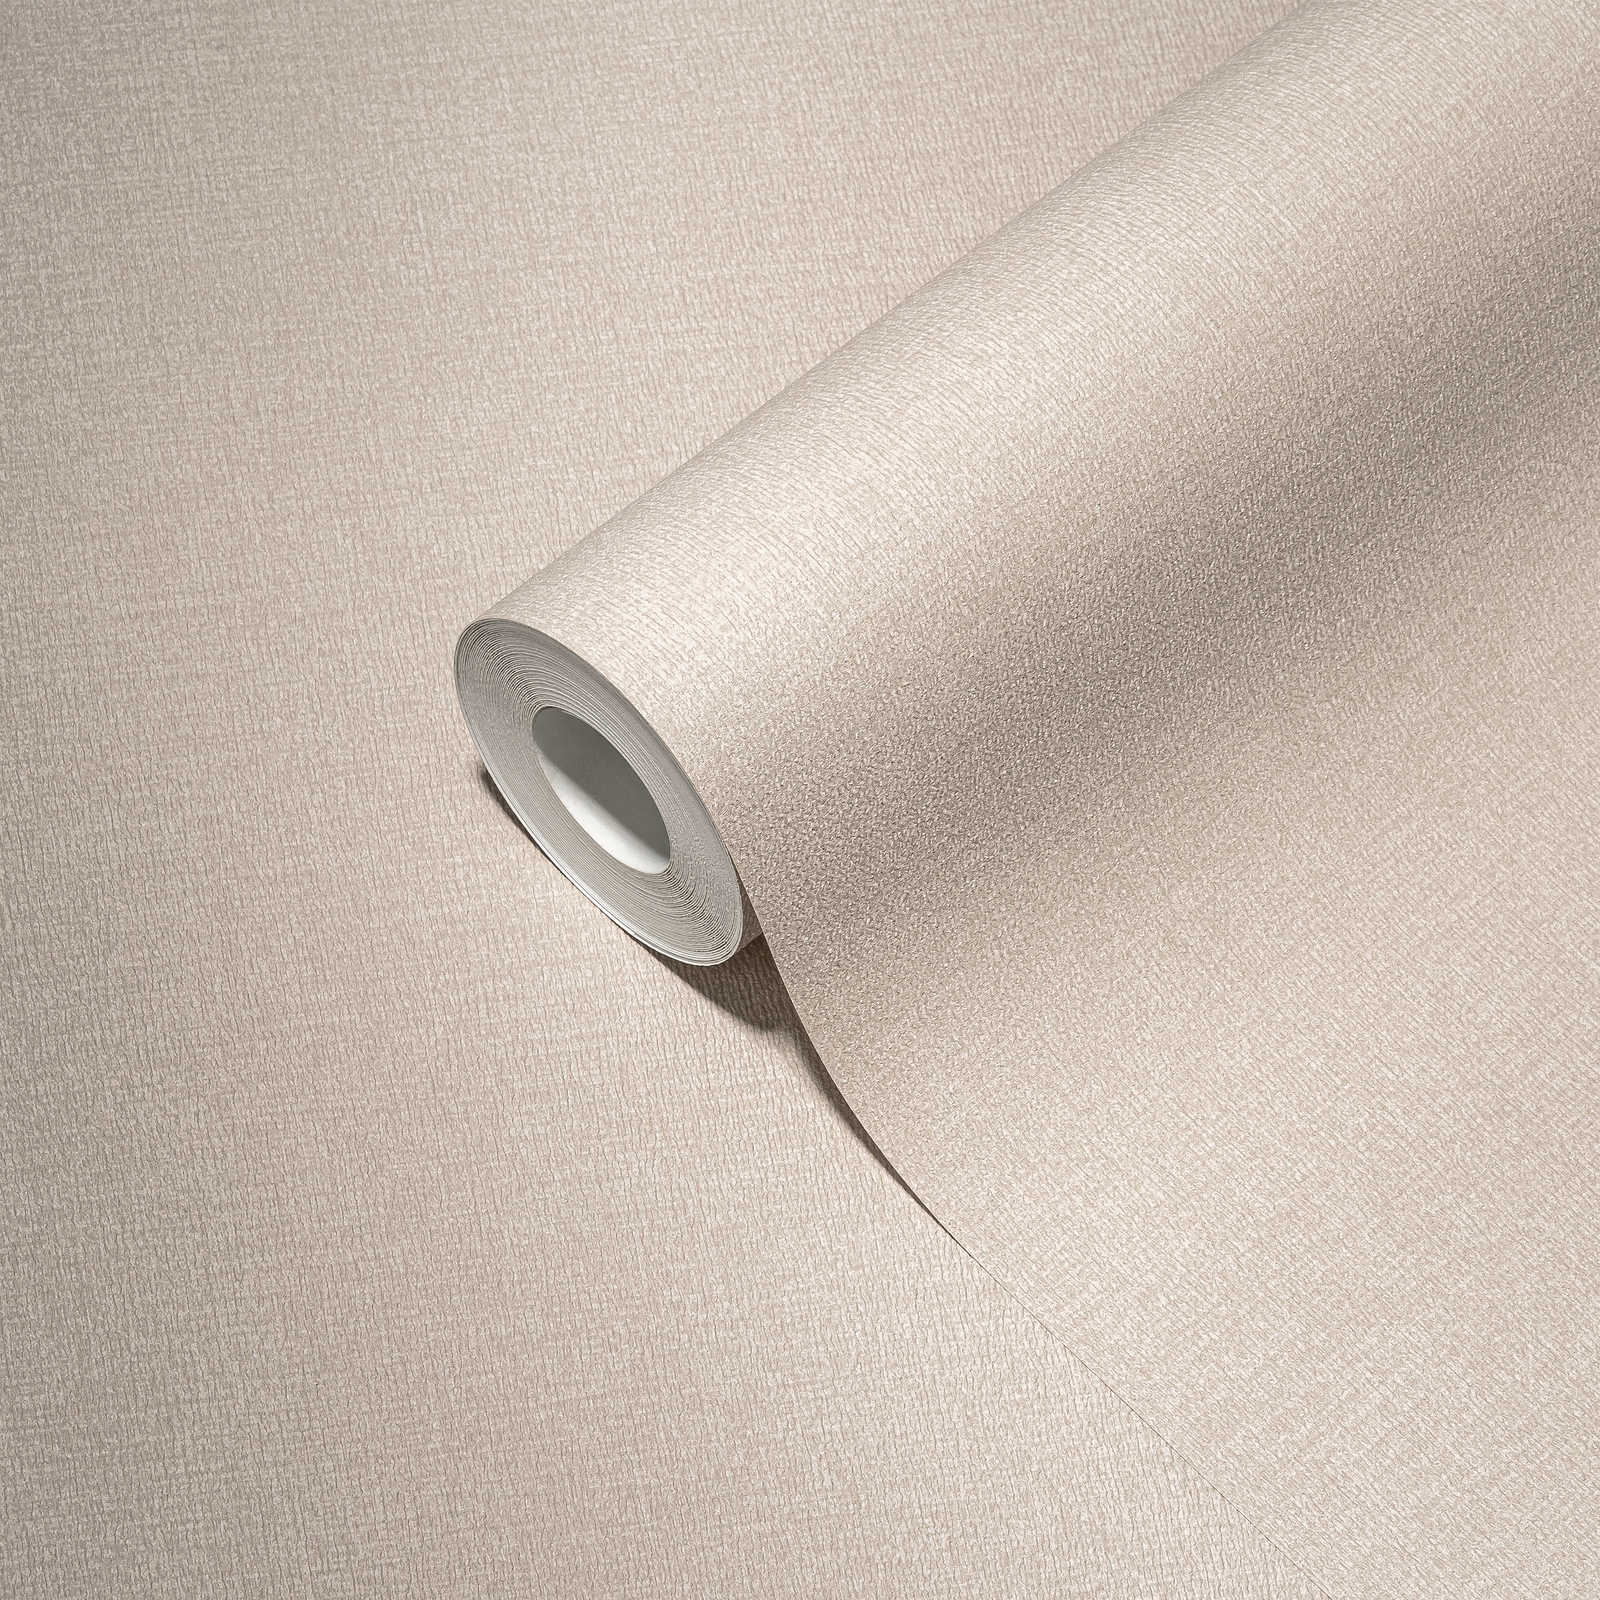             Papel pintado no tejido liso en colores sutiles - greige, gris claro
        